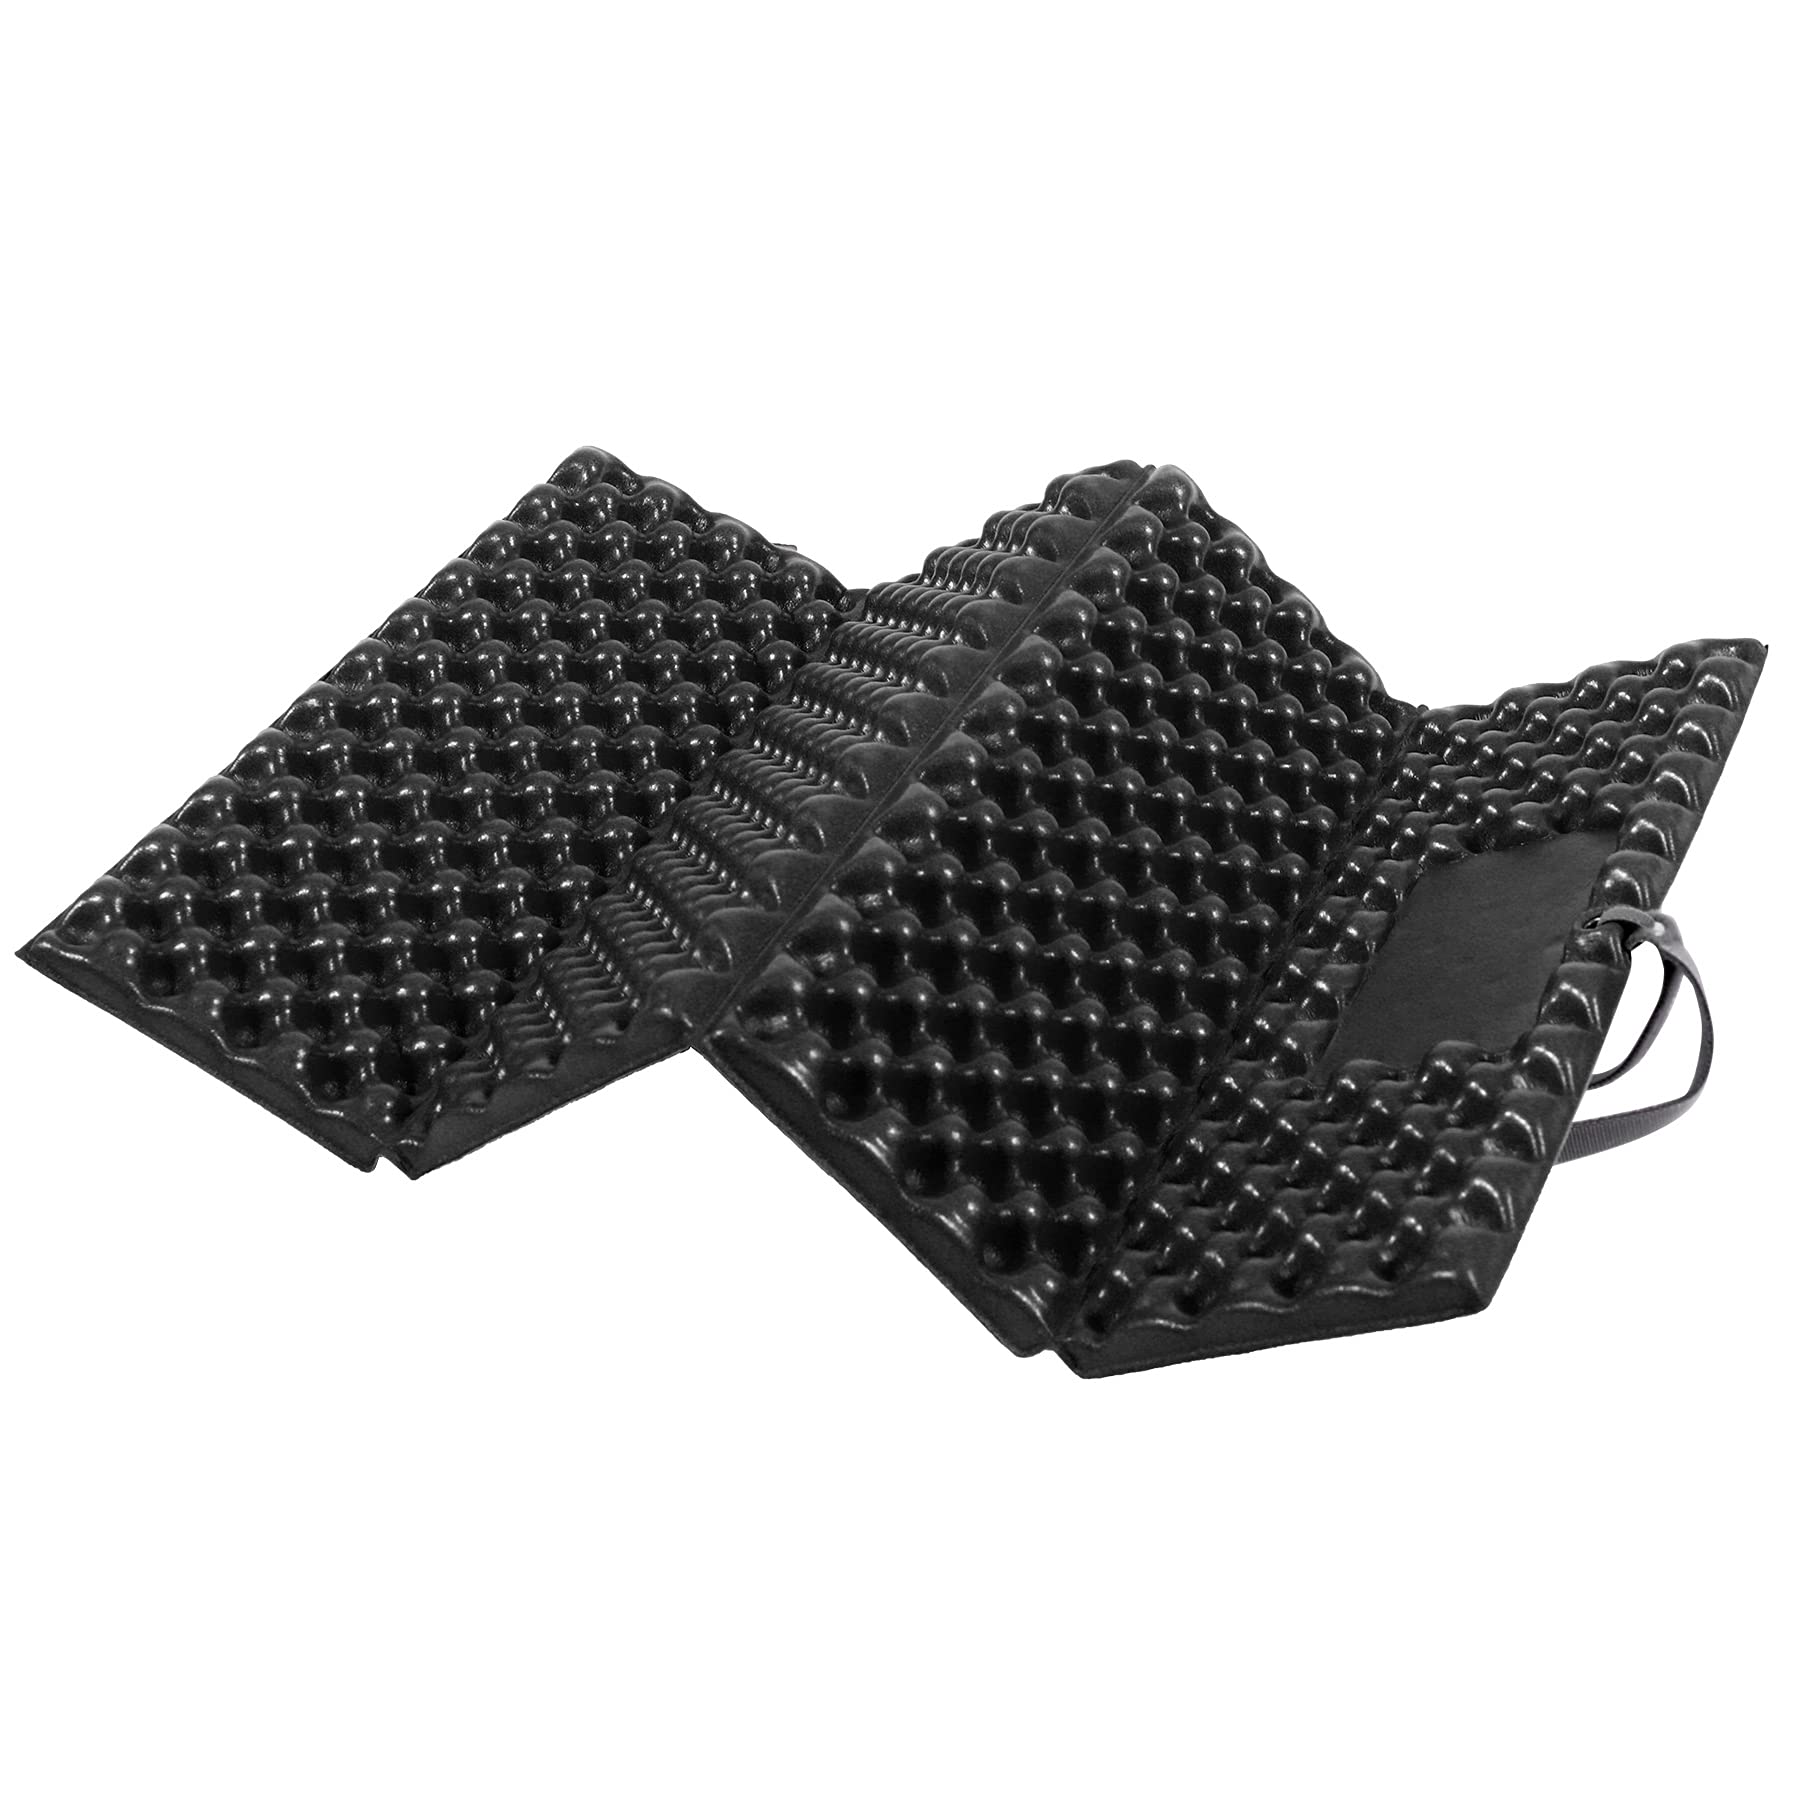 6 Pcs Foam Hiking Seat Pad Ultralight Sitting Pad Waterproof Sitting Pad